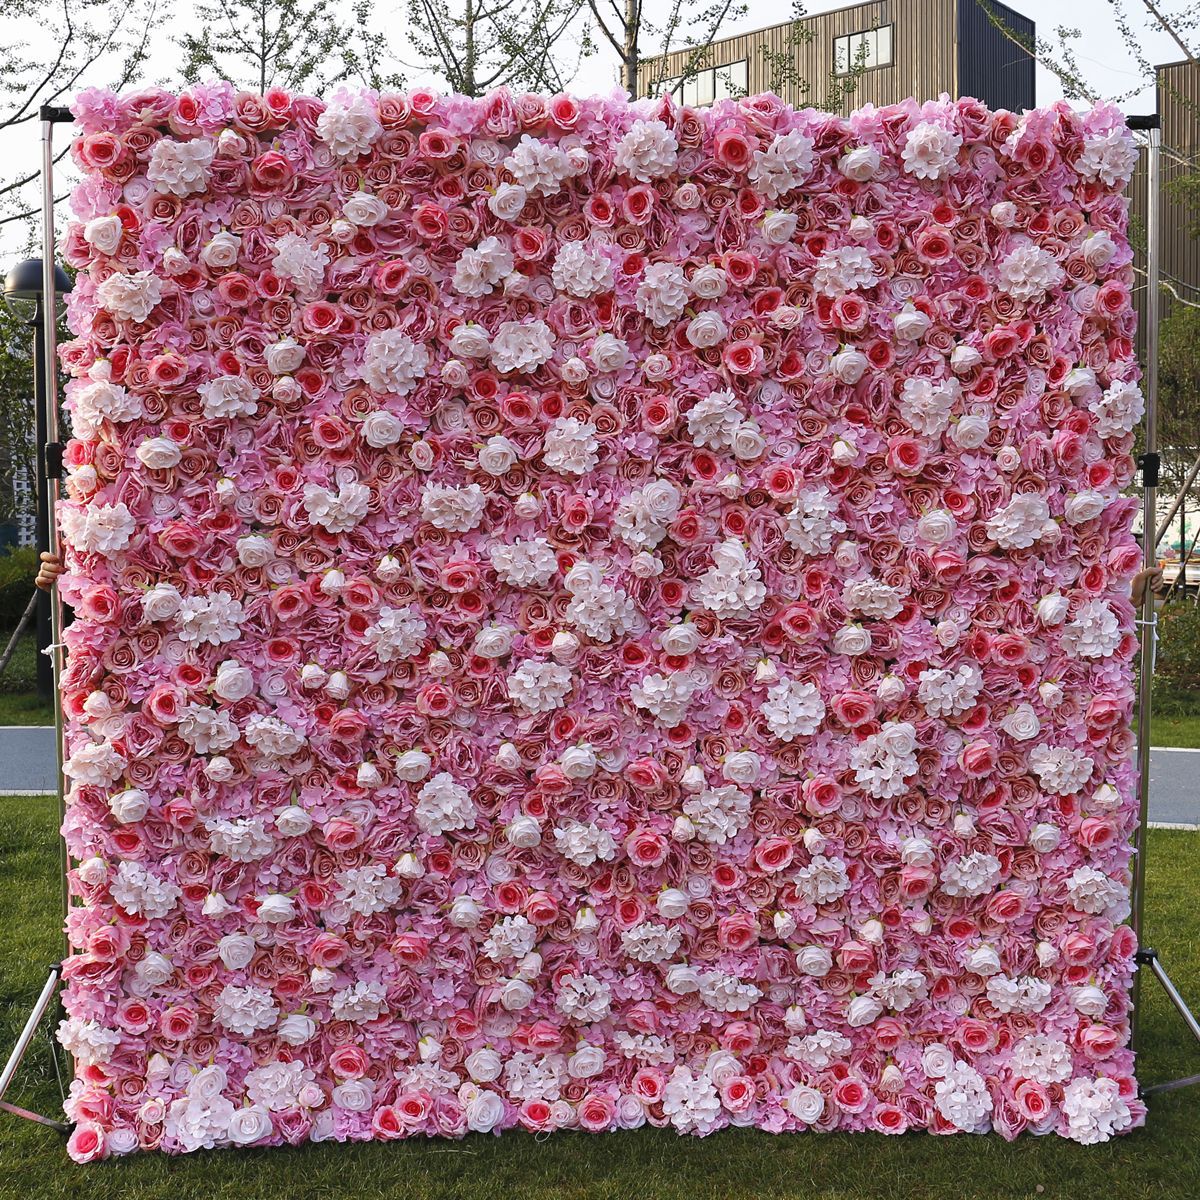  Wedding Fabric Bottom Simulatio Flos Wall Maecenas vitae Wall film Studio Background Silk Flower Row Plant Wall Flower Wall 